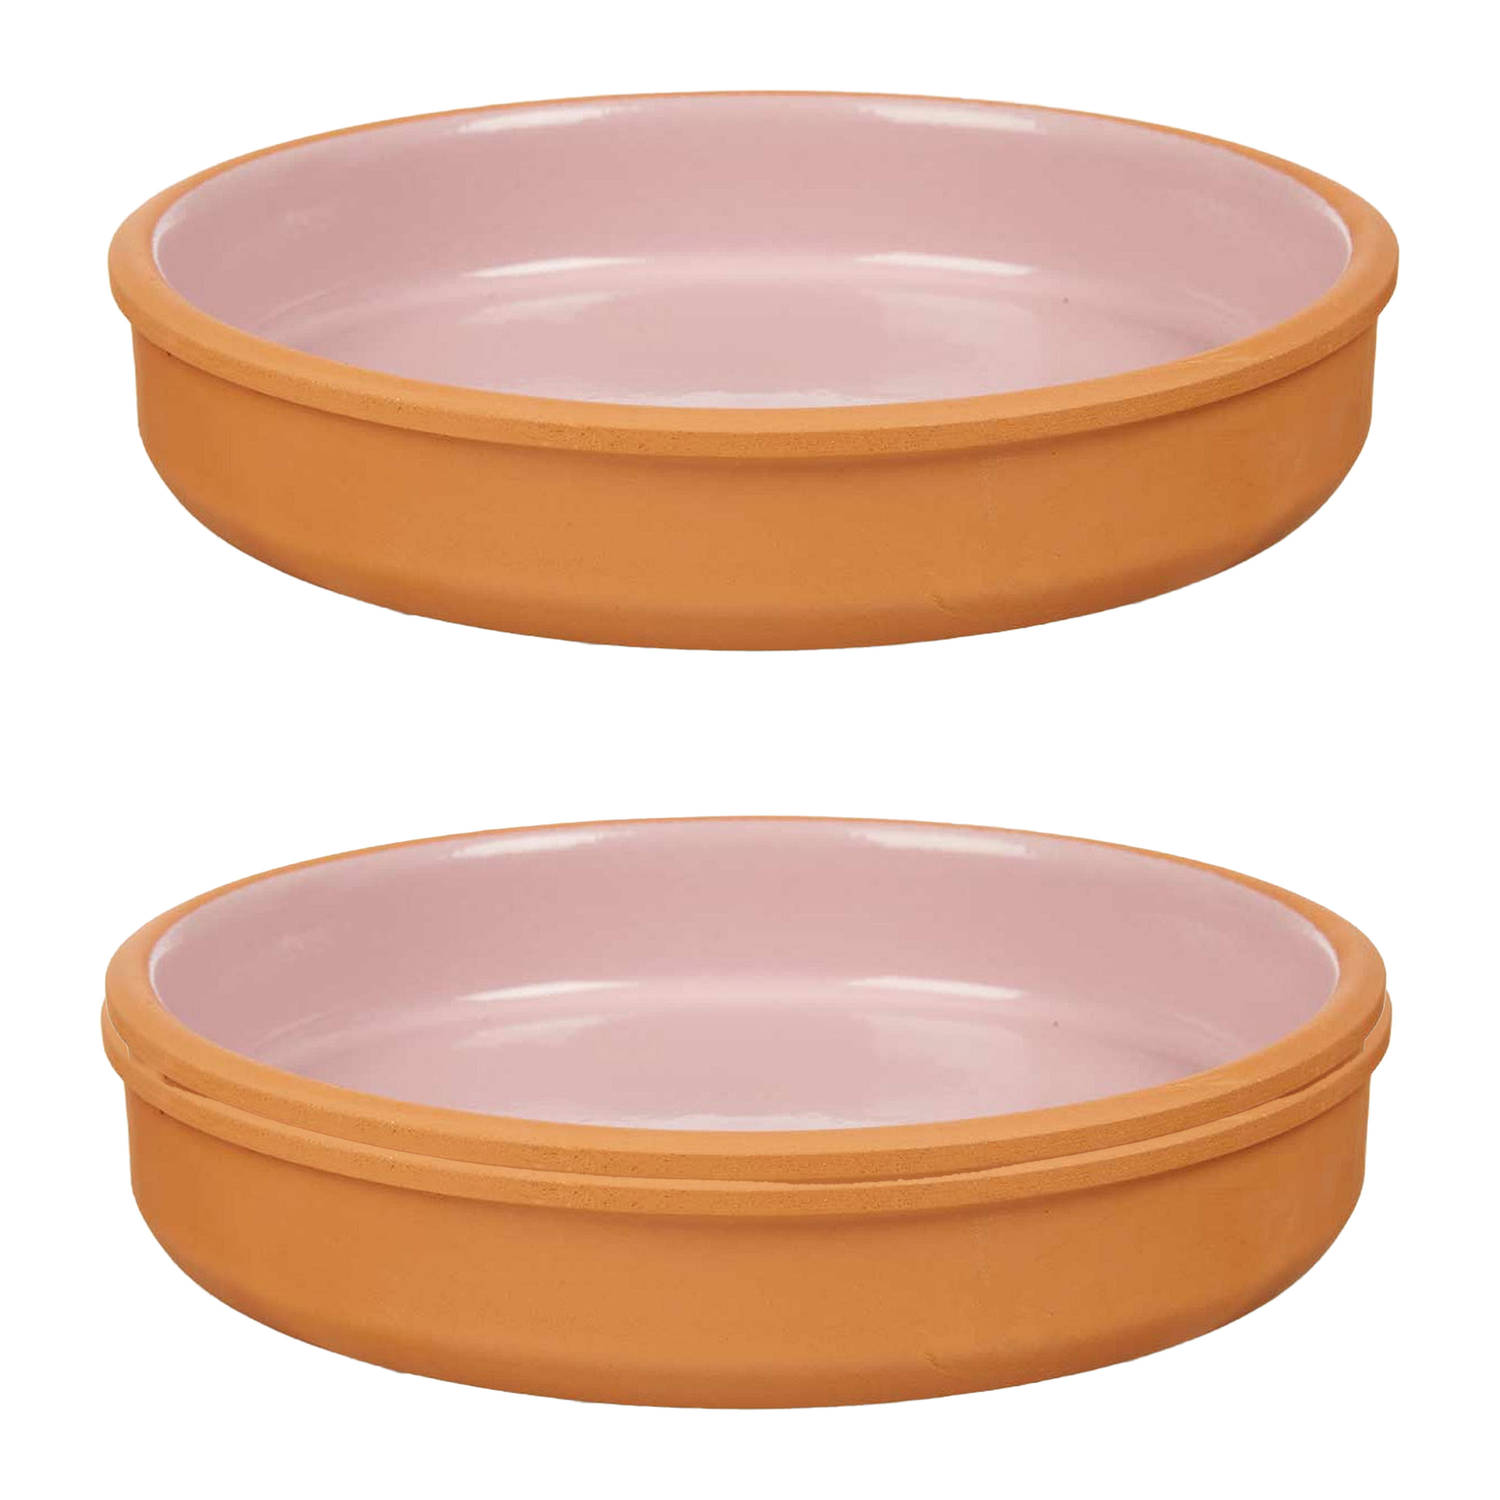 2x stuks tapas-hapjes serveren-oven schaal terracotta-roze 23 x 4 cm Snack en tapasschalen